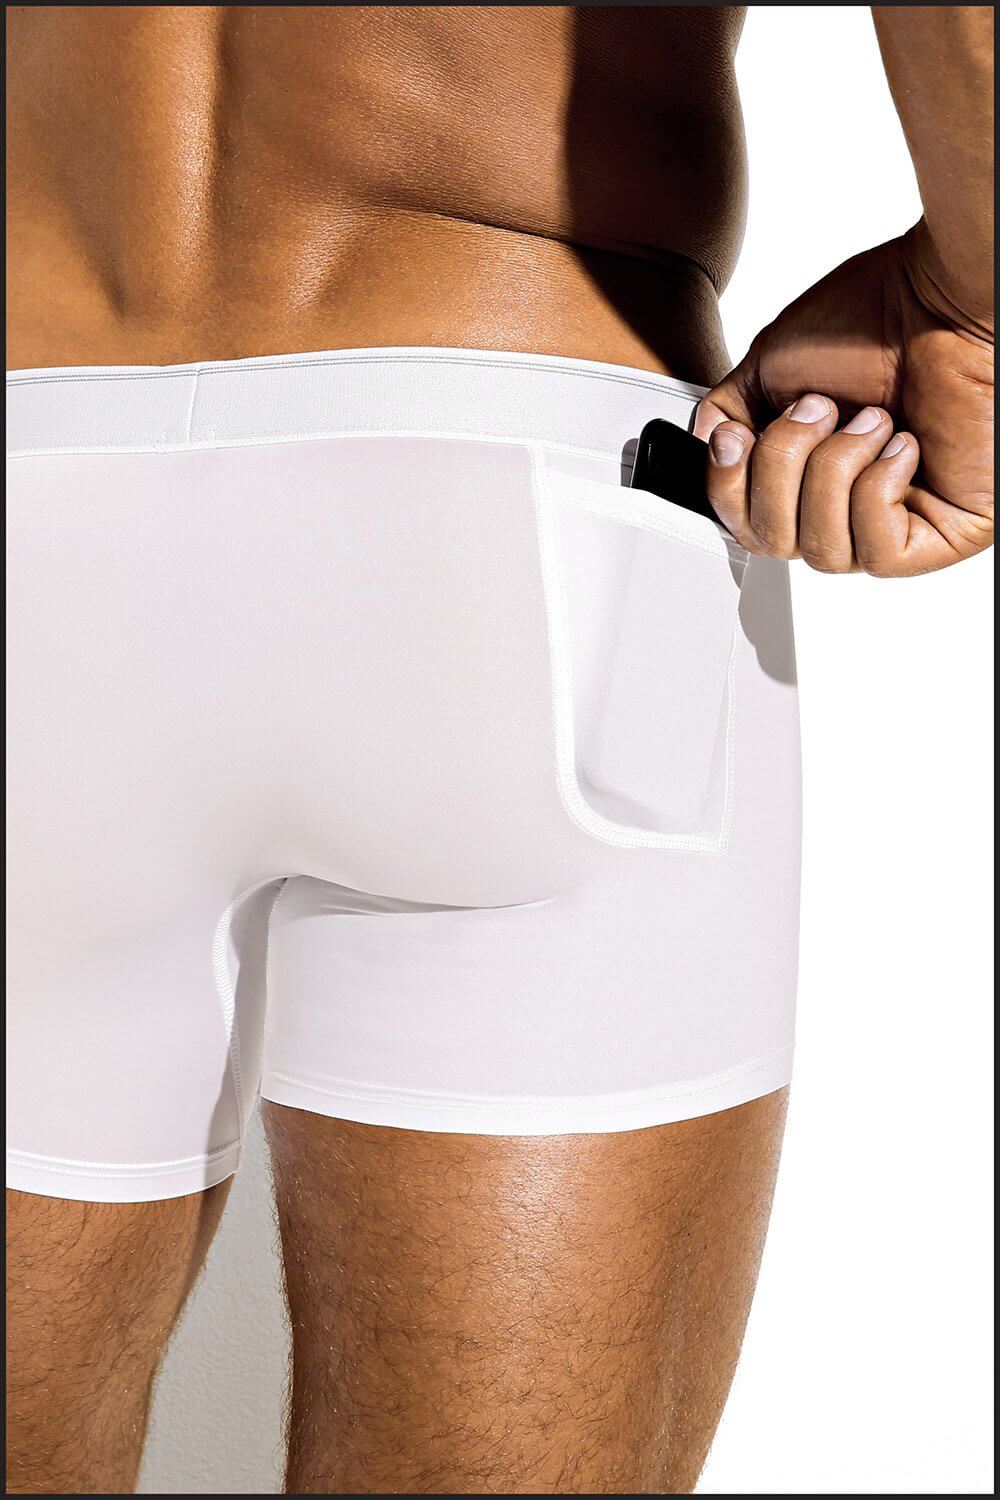 Charlie by matthew zink mens underwear  fitness series sport trunk –  Charlie By Matthew Zink